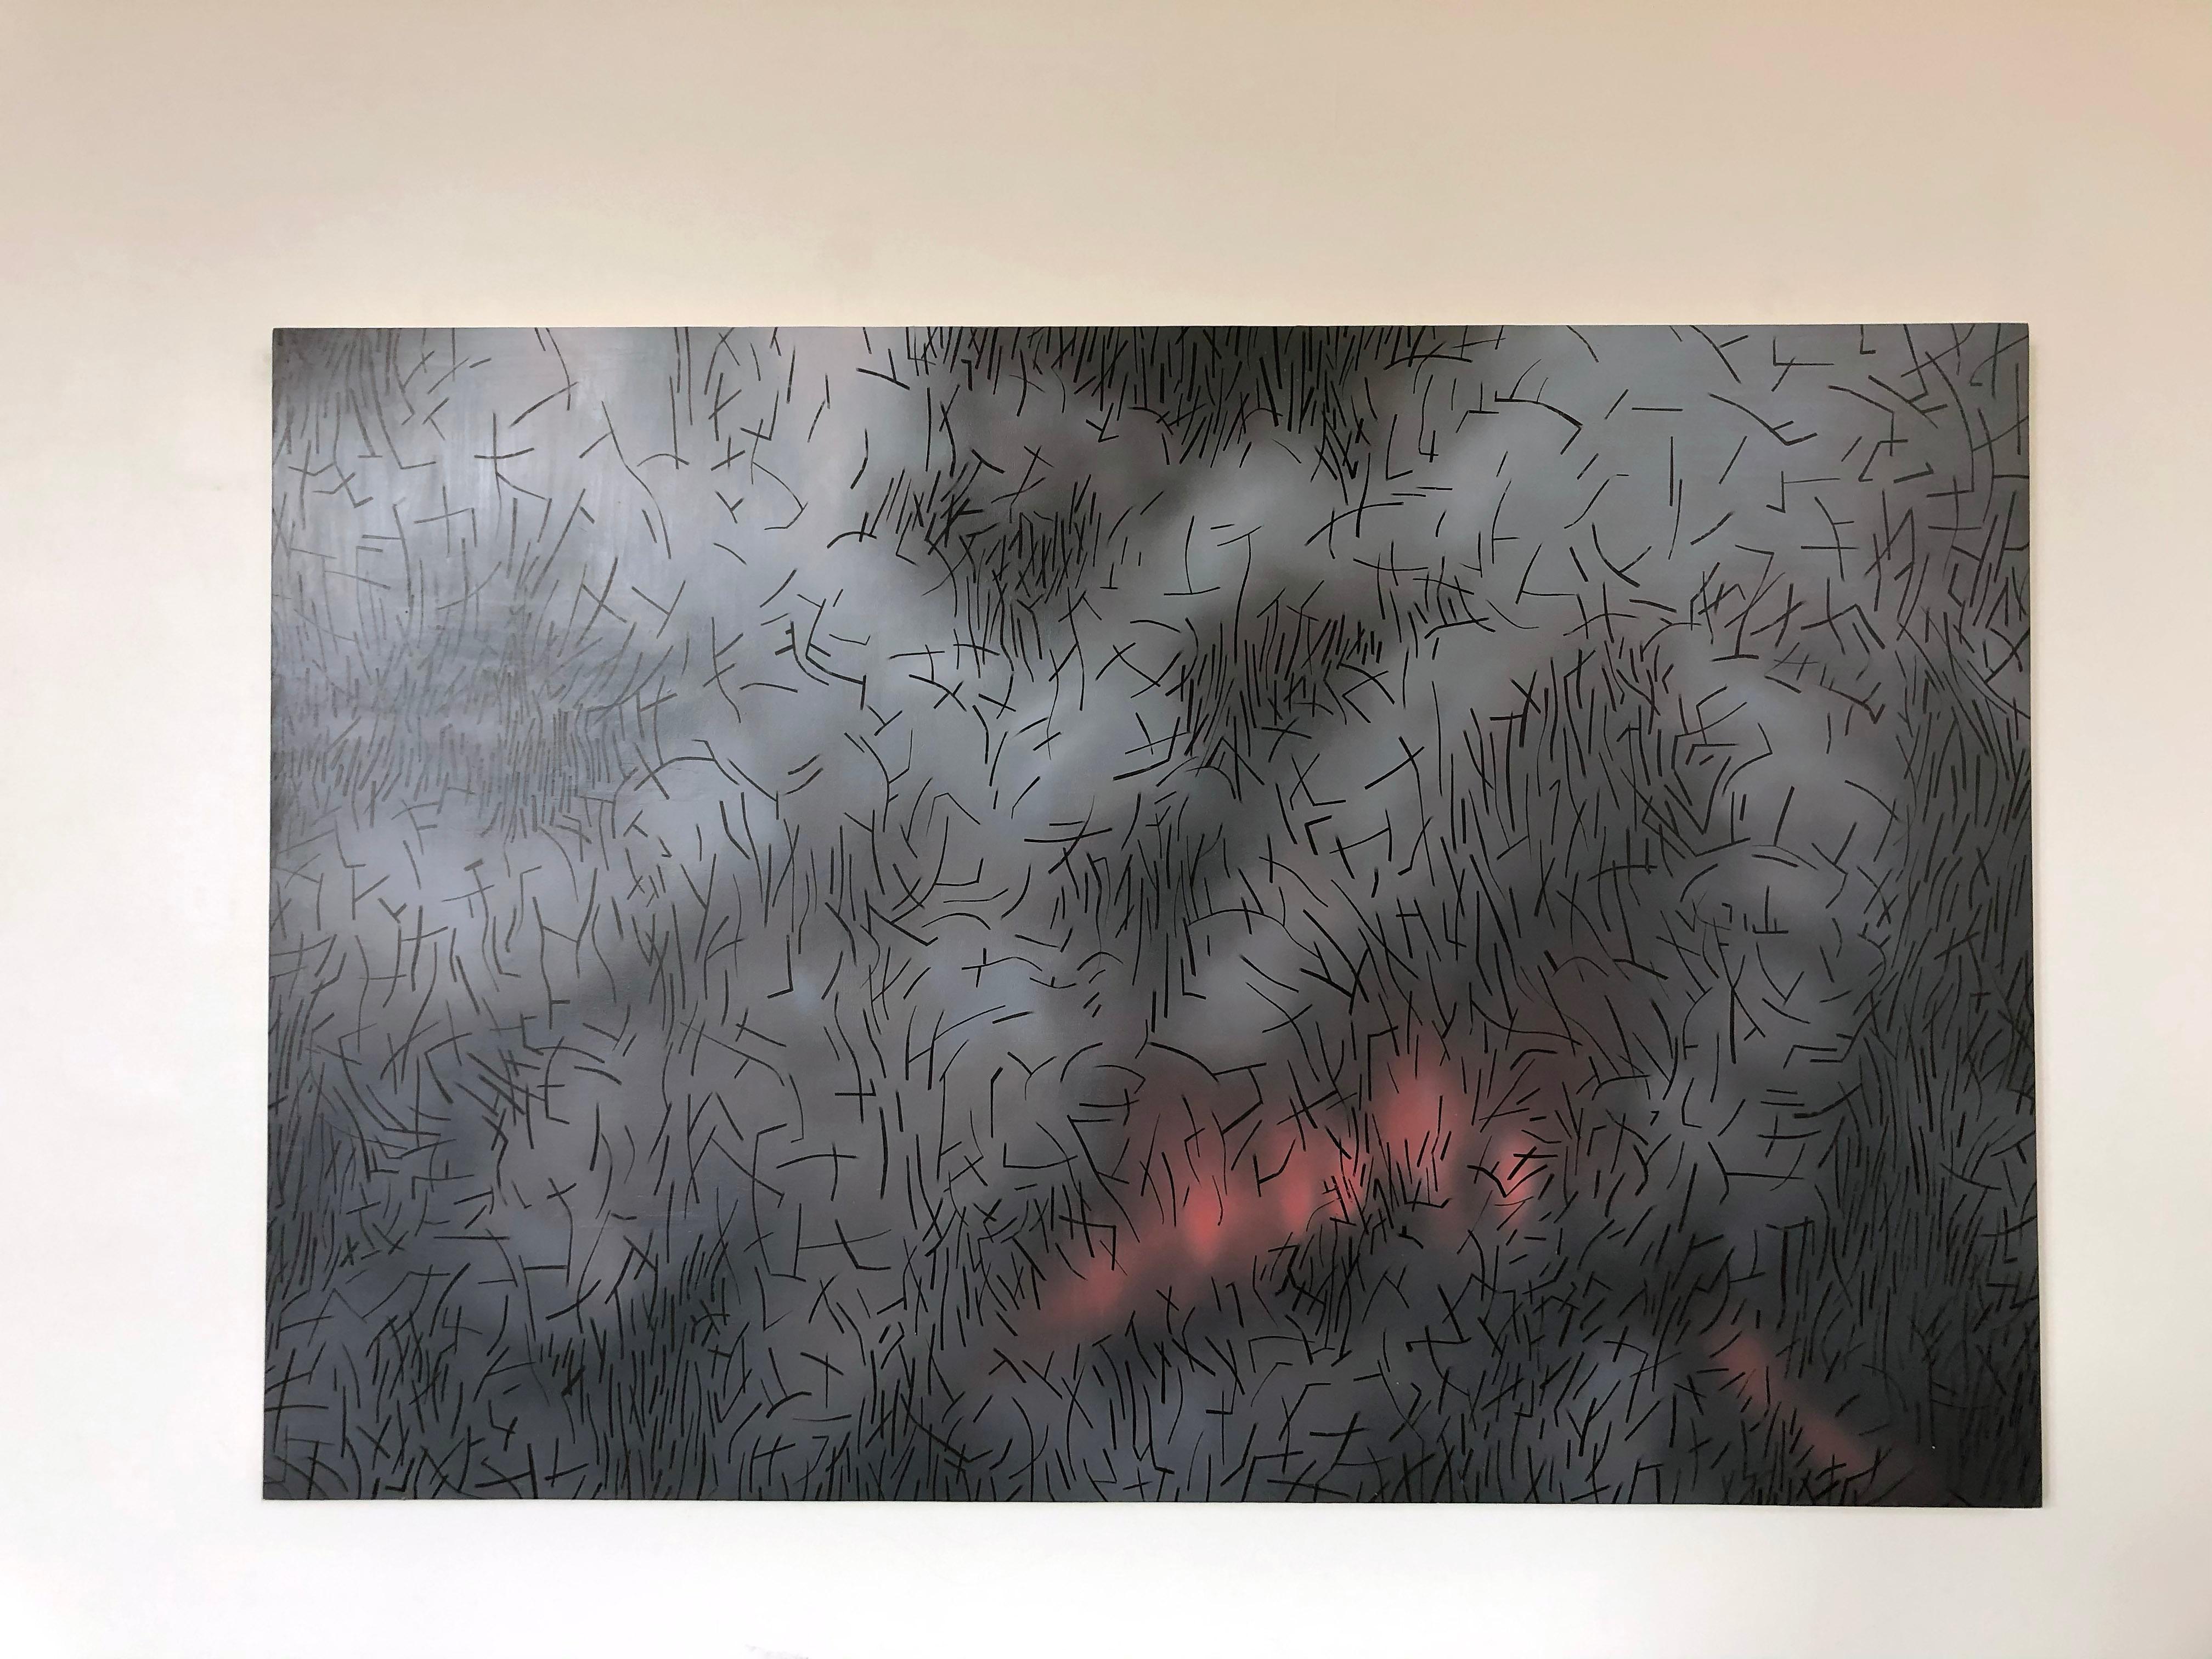 Une peinture abstraite captivante de l'artiste américain contemporain Kyle Butler représentant le feu et des panaches de fumée dans le style caractéristique de l'artiste.

Le panneau est recouvert de graphite, puis de couches de peinture qui sont